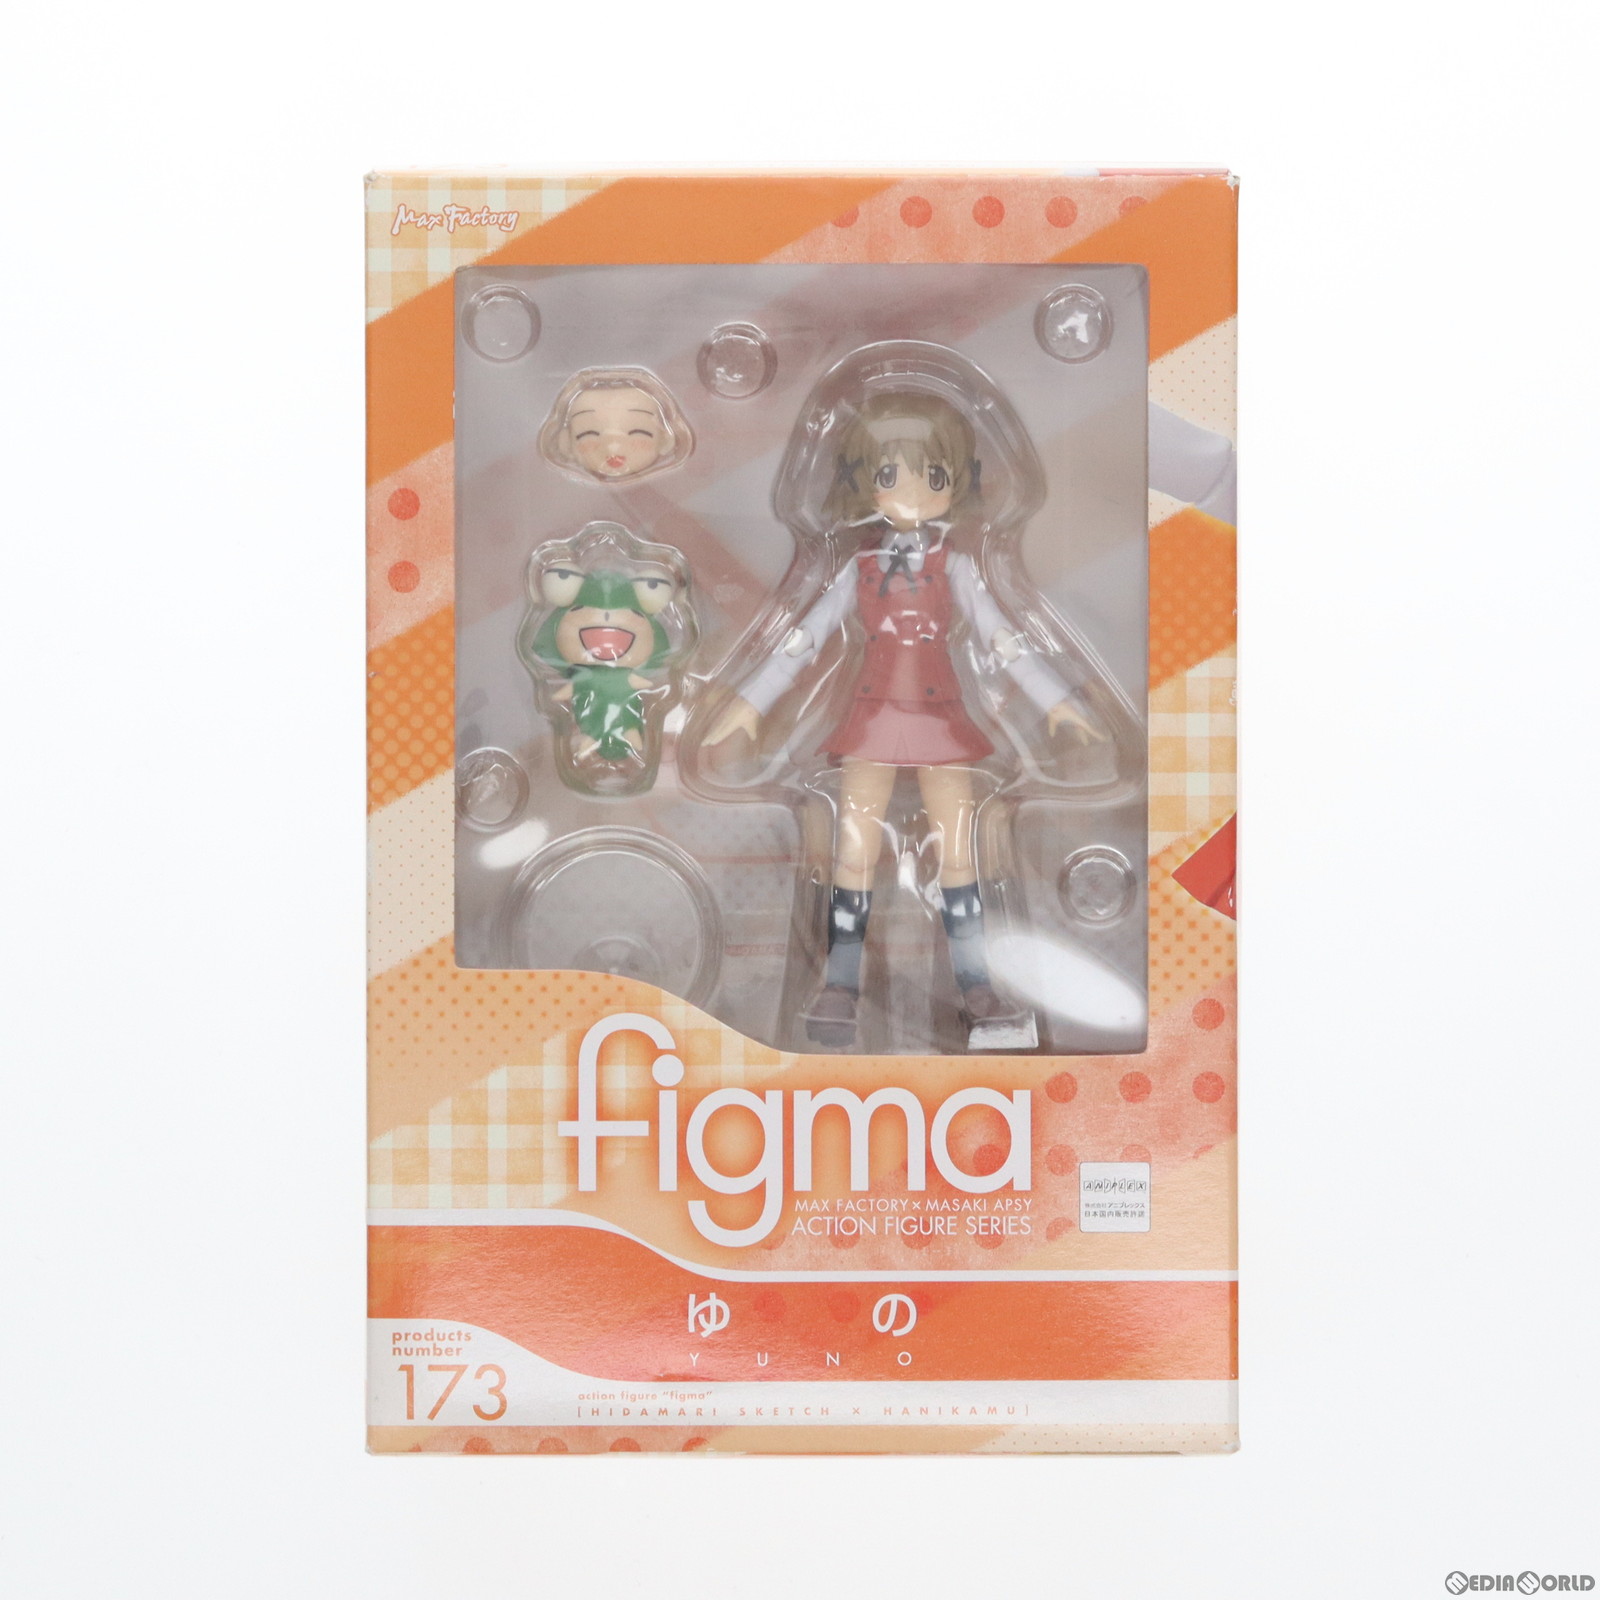 【中古】[FIG]figma(フィグマ) 173 ゆの ひだまりスケッチ×ハニカム 完成品 可動フィギュア マックスファクトリー(20130526)画像